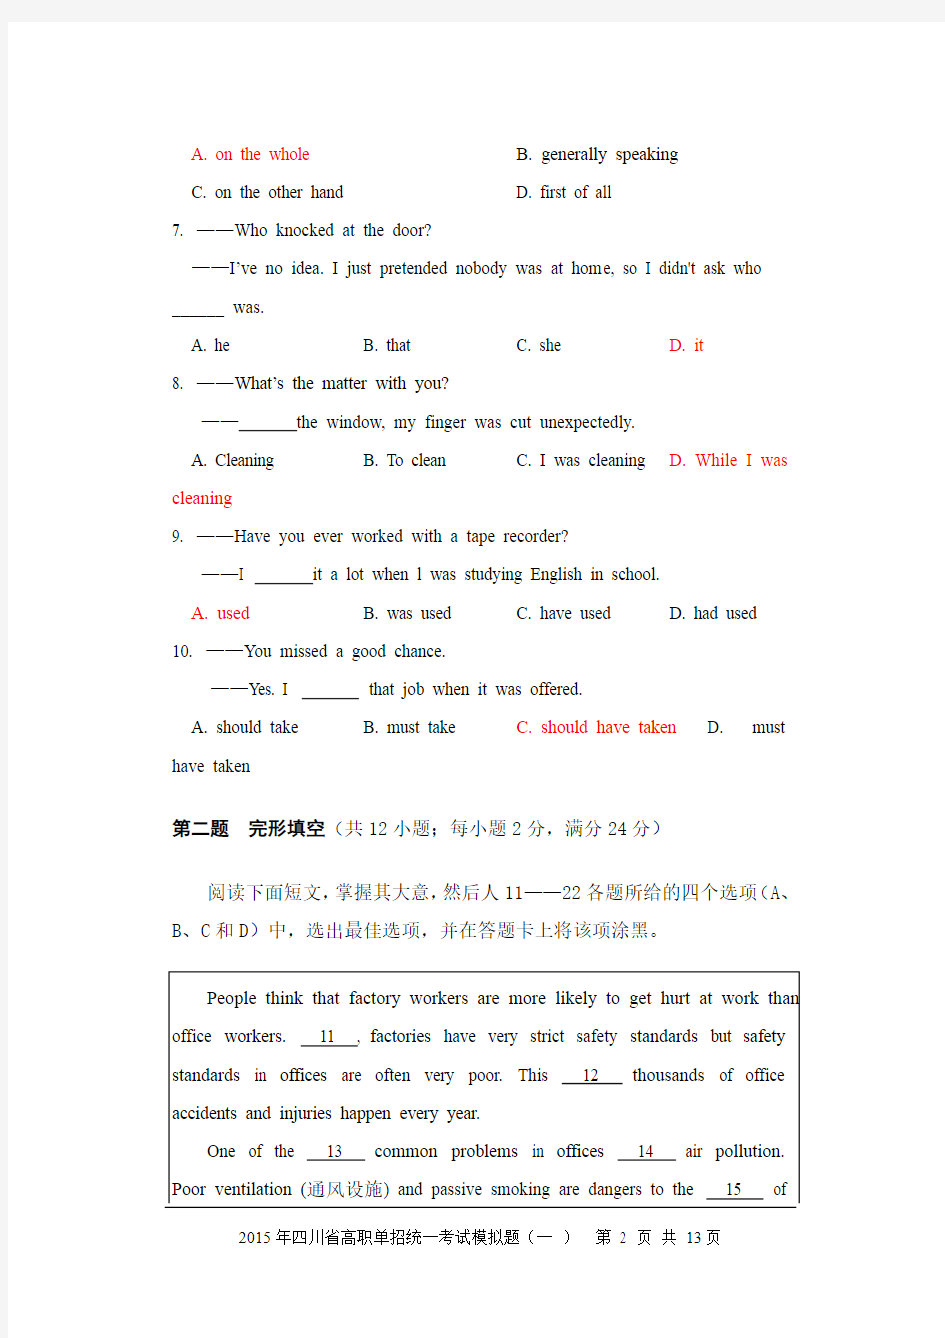 2015年四川省高职单招统一考试英语模拟题-文中含答案(标红处)